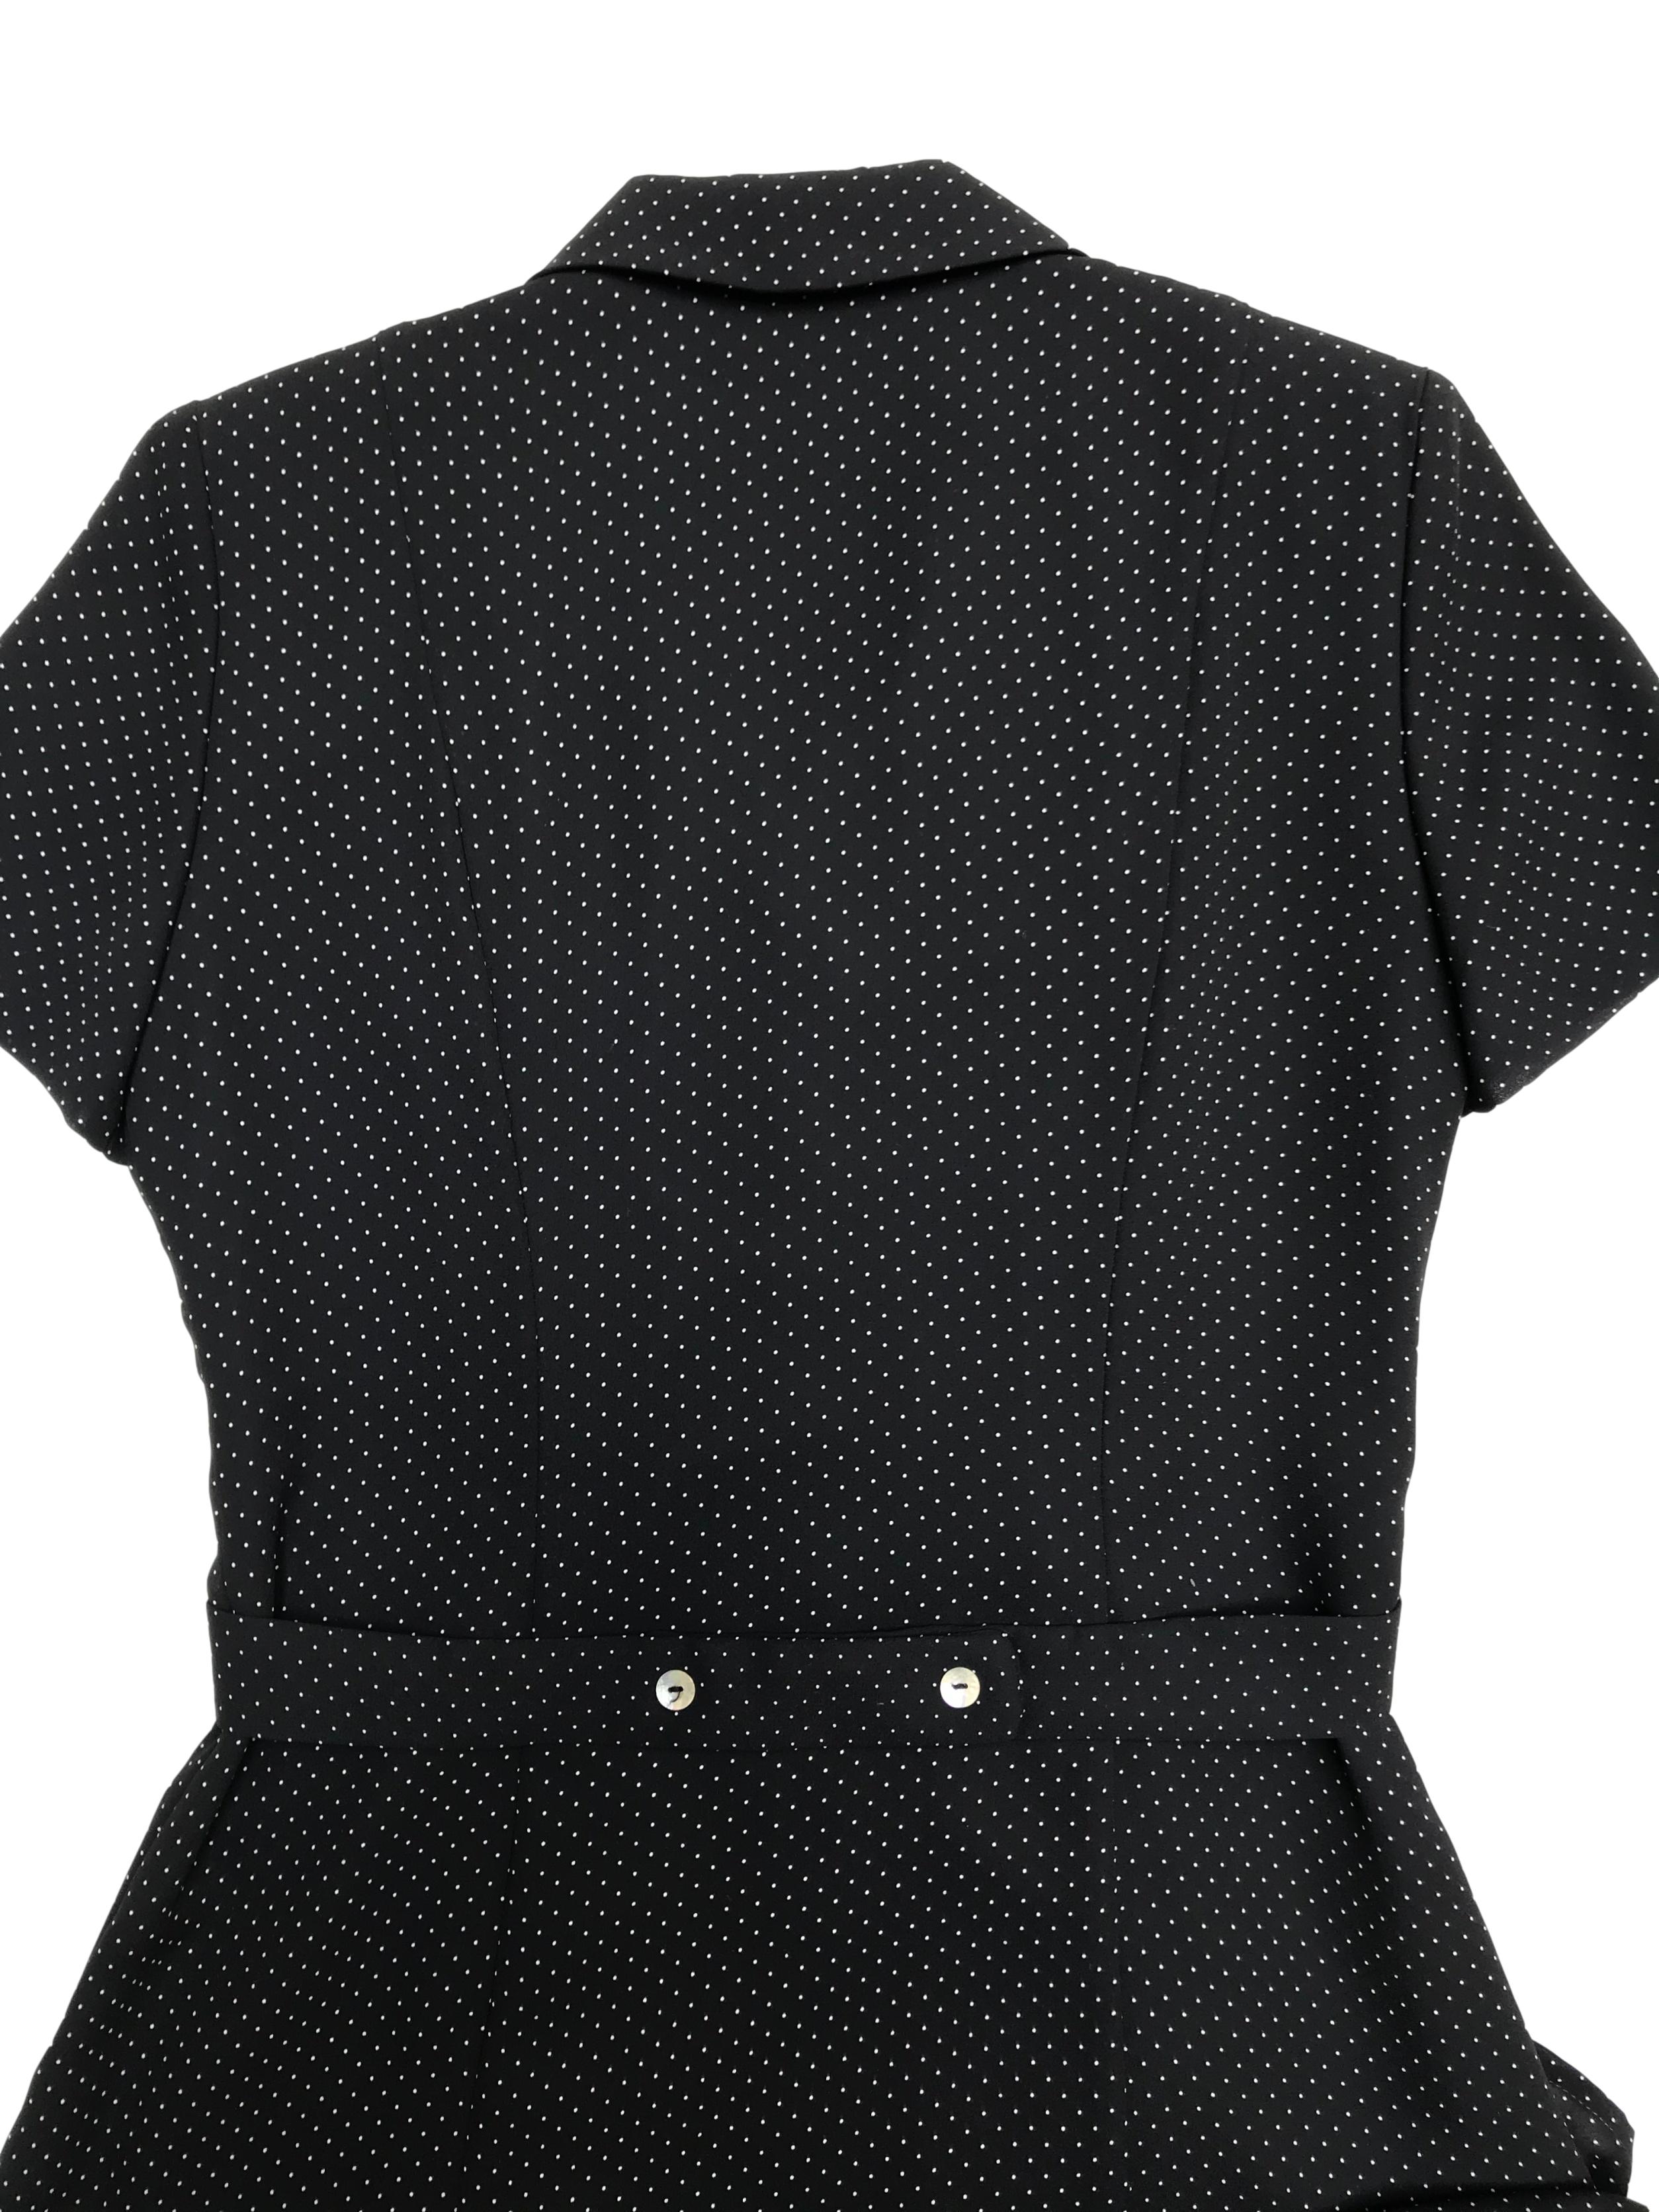 Vestido vintage midi, de gasa negra con puntitos blancos, forrado, con botones nacarados a lo largo y falda en A. Hermoso. Busto 100cm Cintura 80cm Largo 115cm